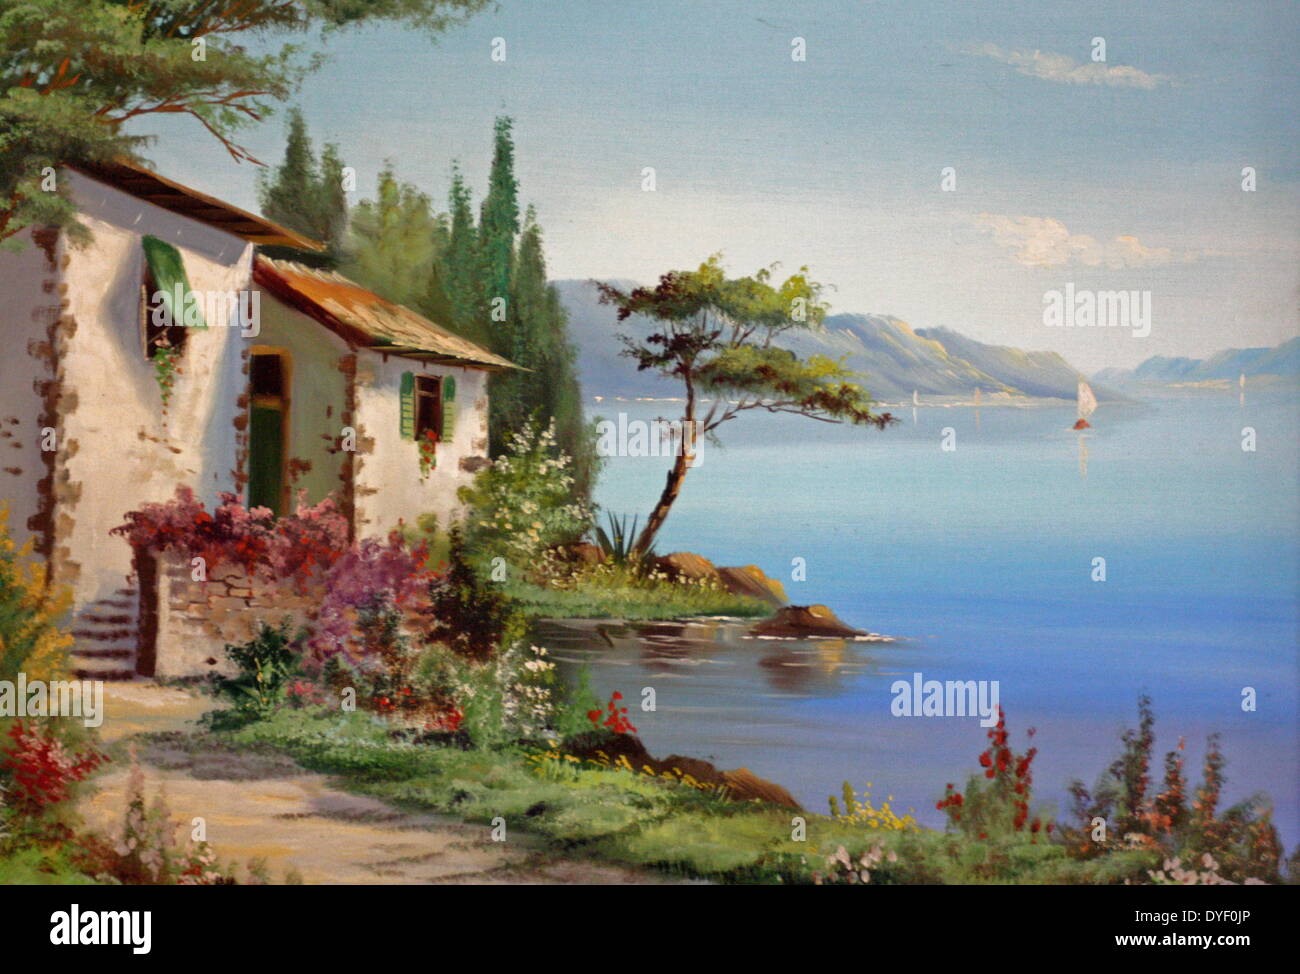 Haus am Gardasee, Italien von Bonelli. Öl auf Leinwand, ca. 1950  Stockfotografie - Alamy